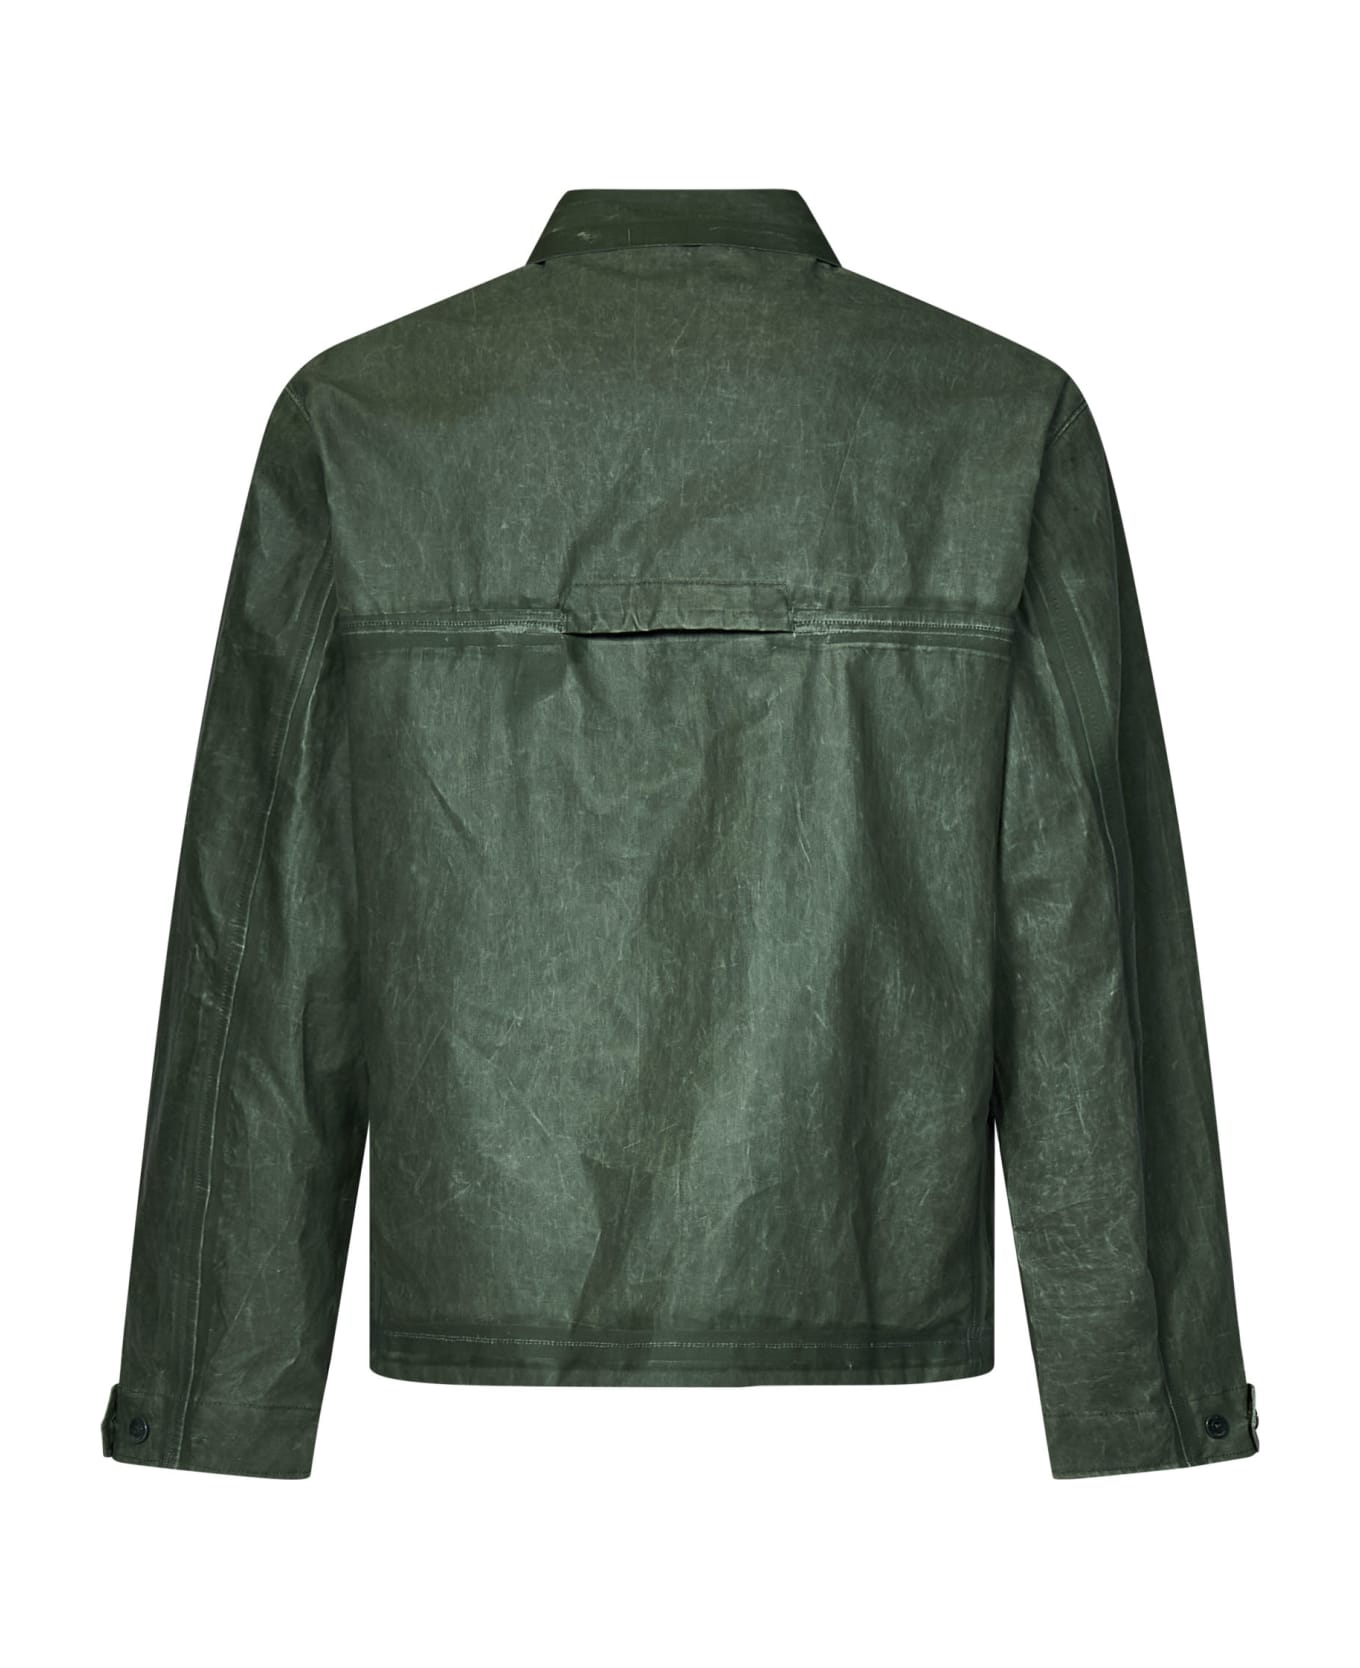 C.P. Company Jacket - GREEN